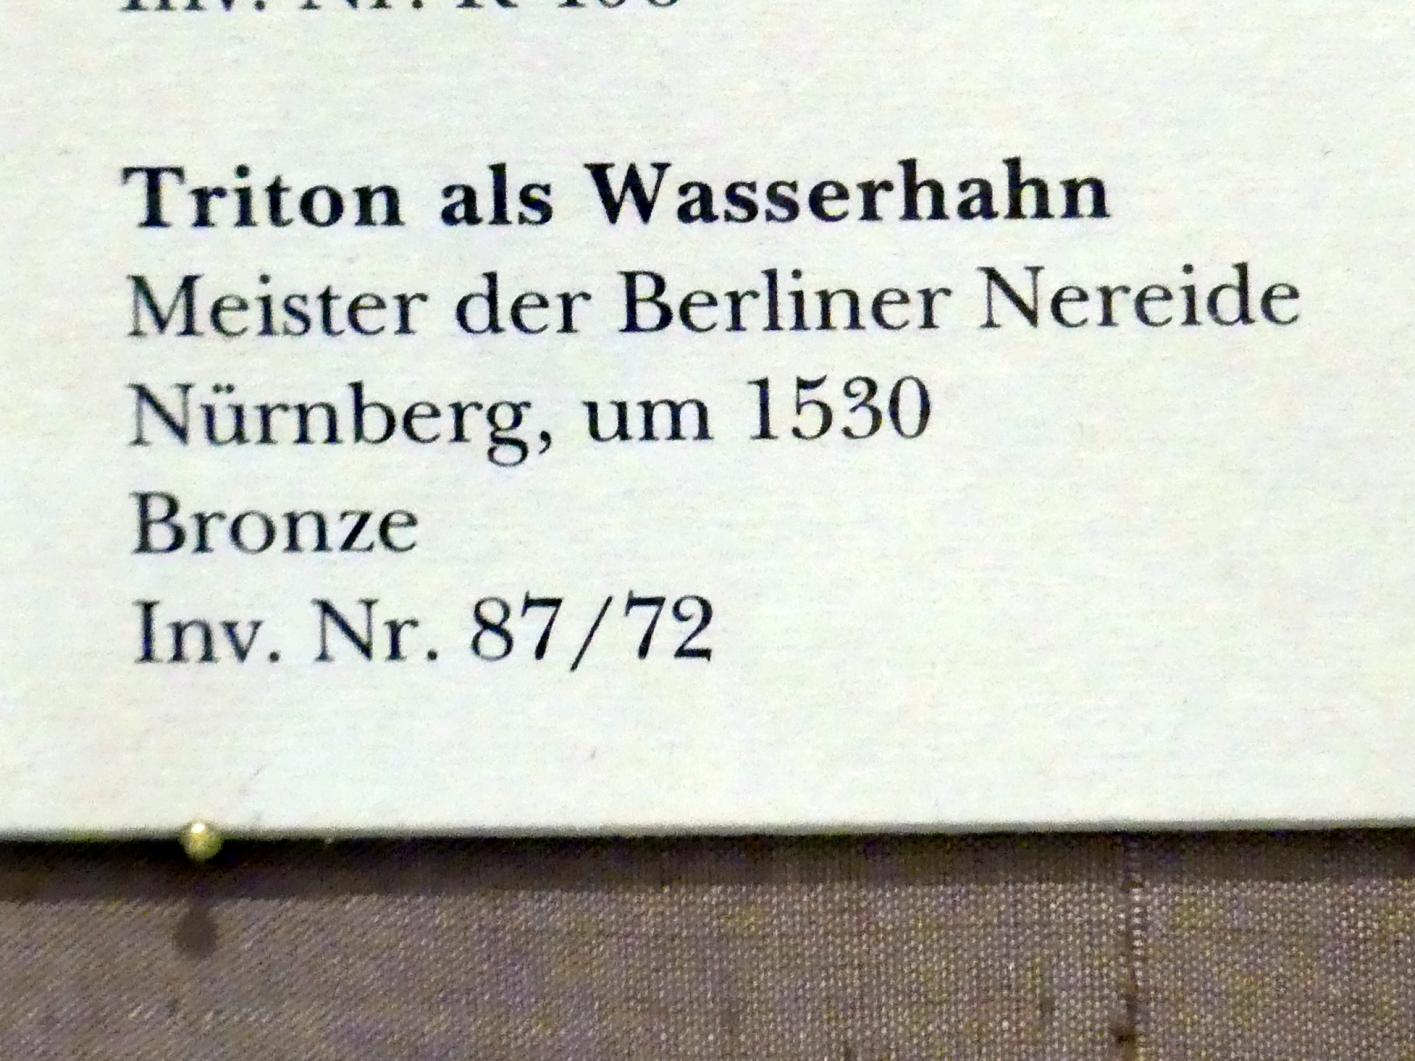 Meister der Berliner Nereide (1530), Triton als Wasserhahn, München, Bayerisches Nationalmuseum, Saal 21, um 1530, Bild 3/3